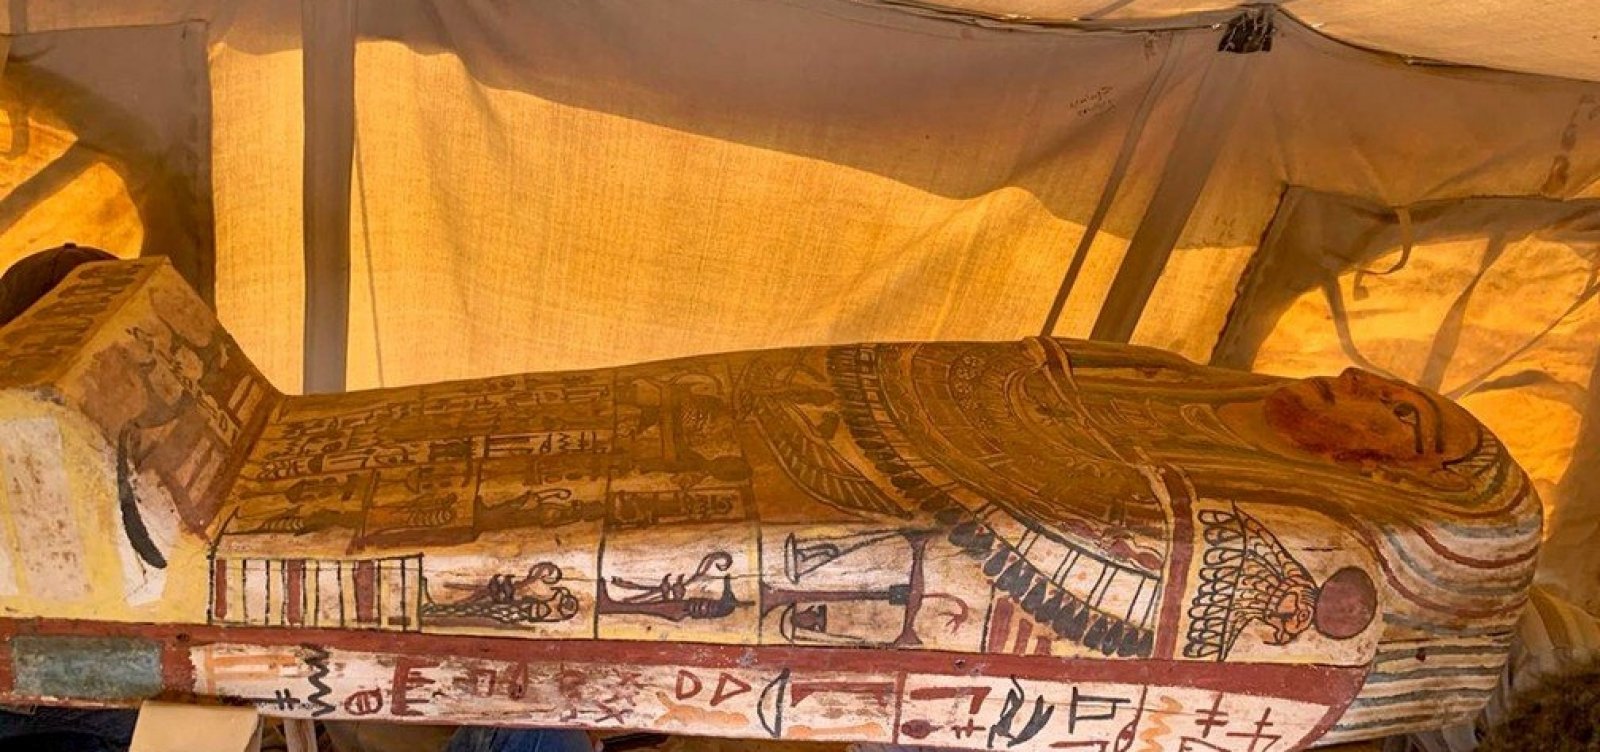 Egito anuncia a descoberta de 14 sarcófagos com cerca de 2,5 mil anos